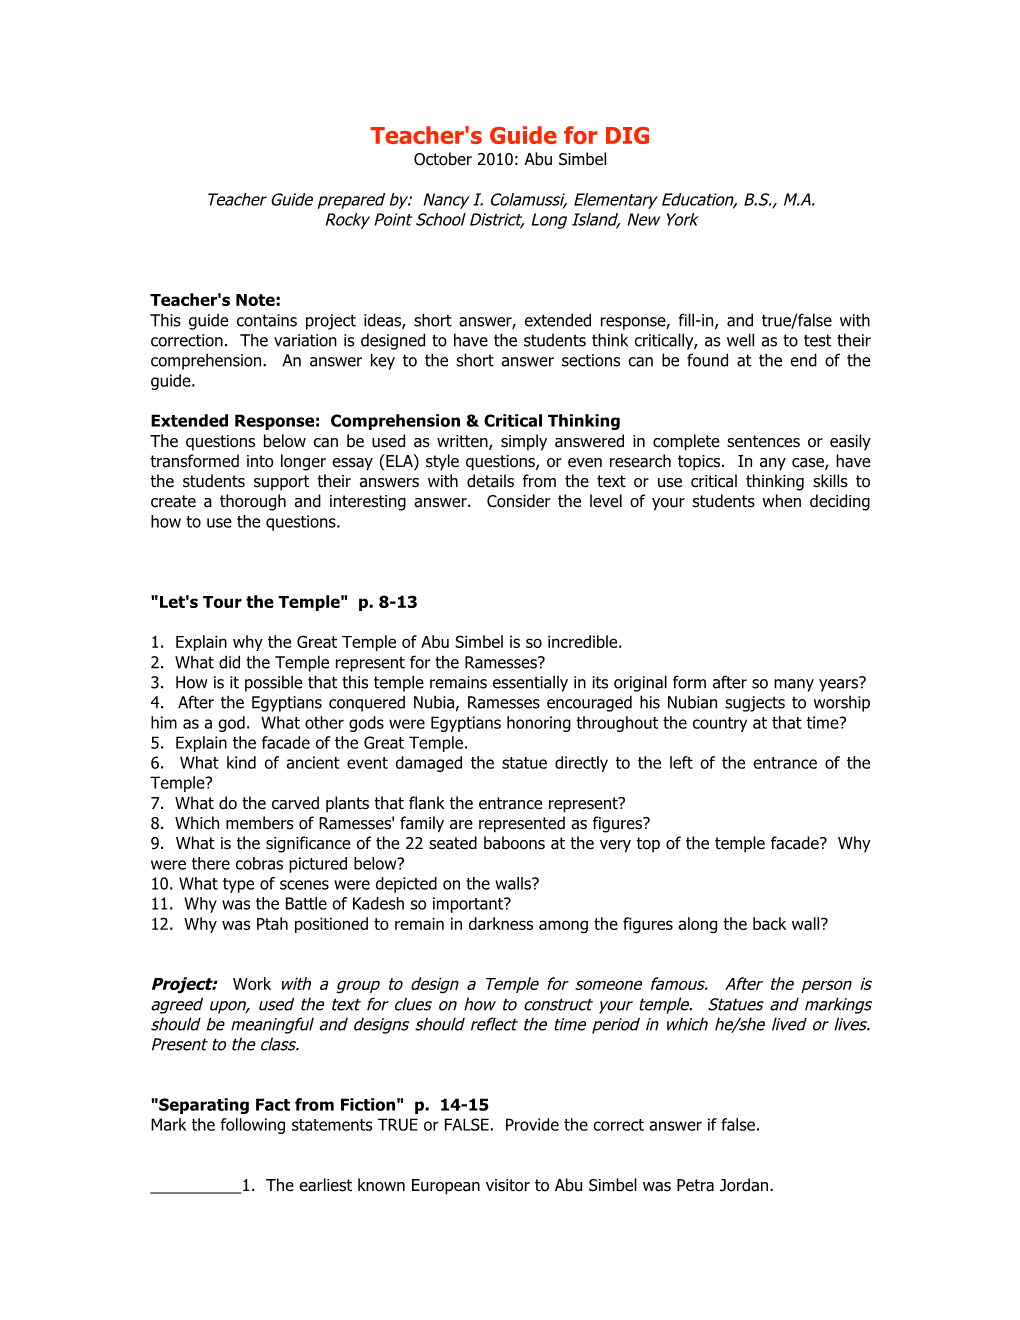 Teacher's Guide for DIG October 2010: Abu Simbel